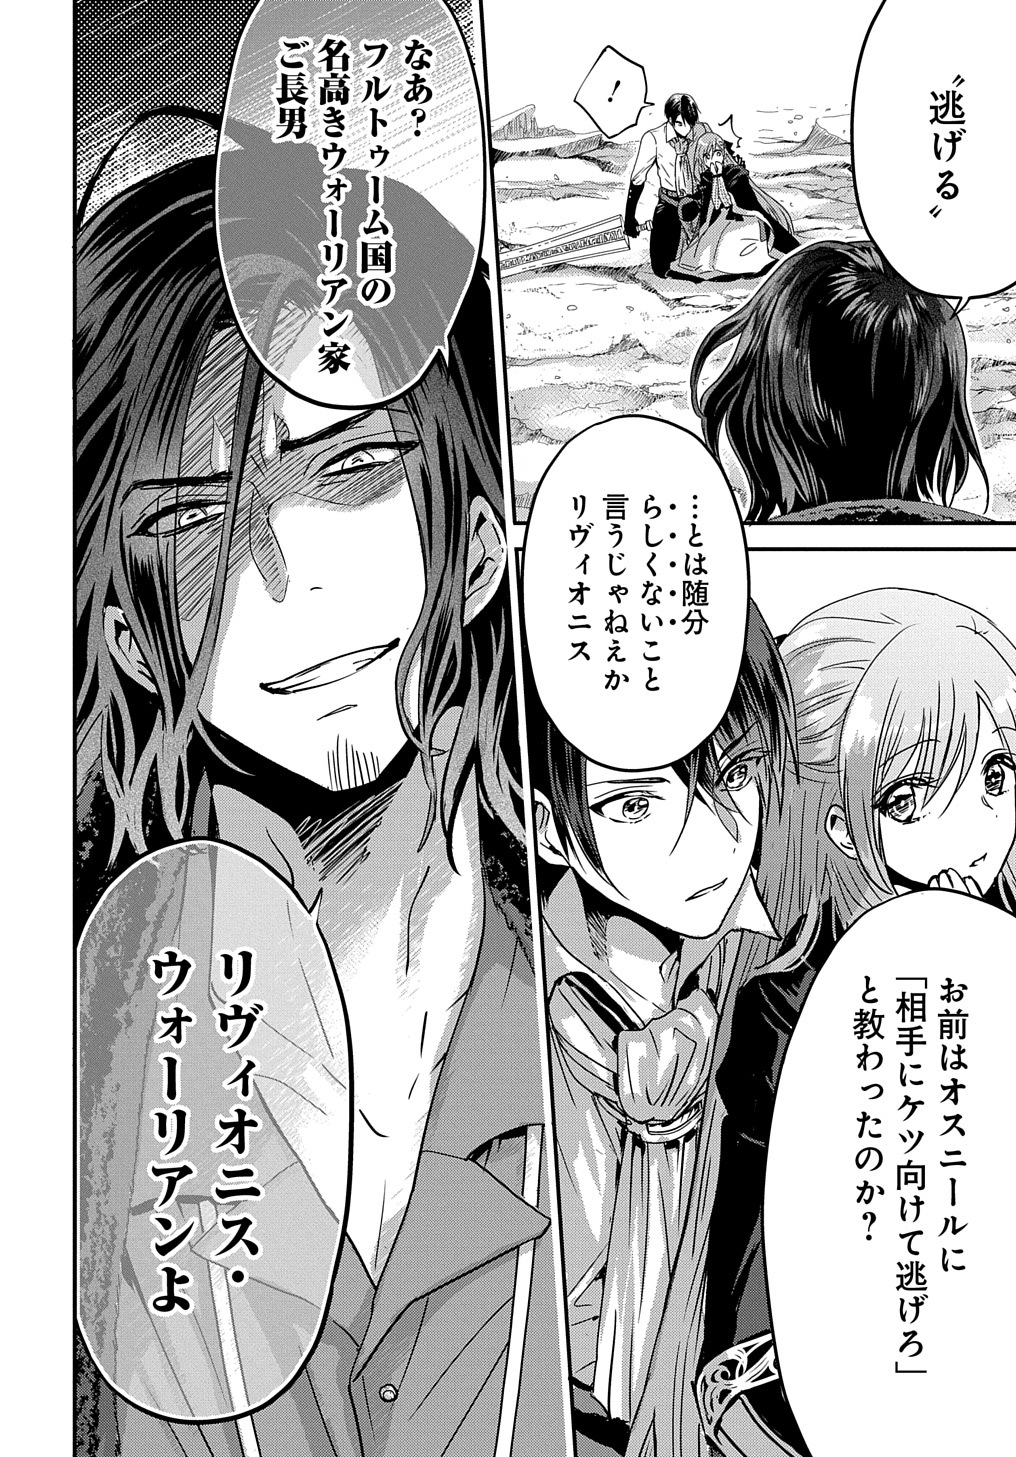 Konyakusha no Uwaki Genba wo Michatta no de Hajimari no Kane ga narimashita - Chapter 8 - Page 4